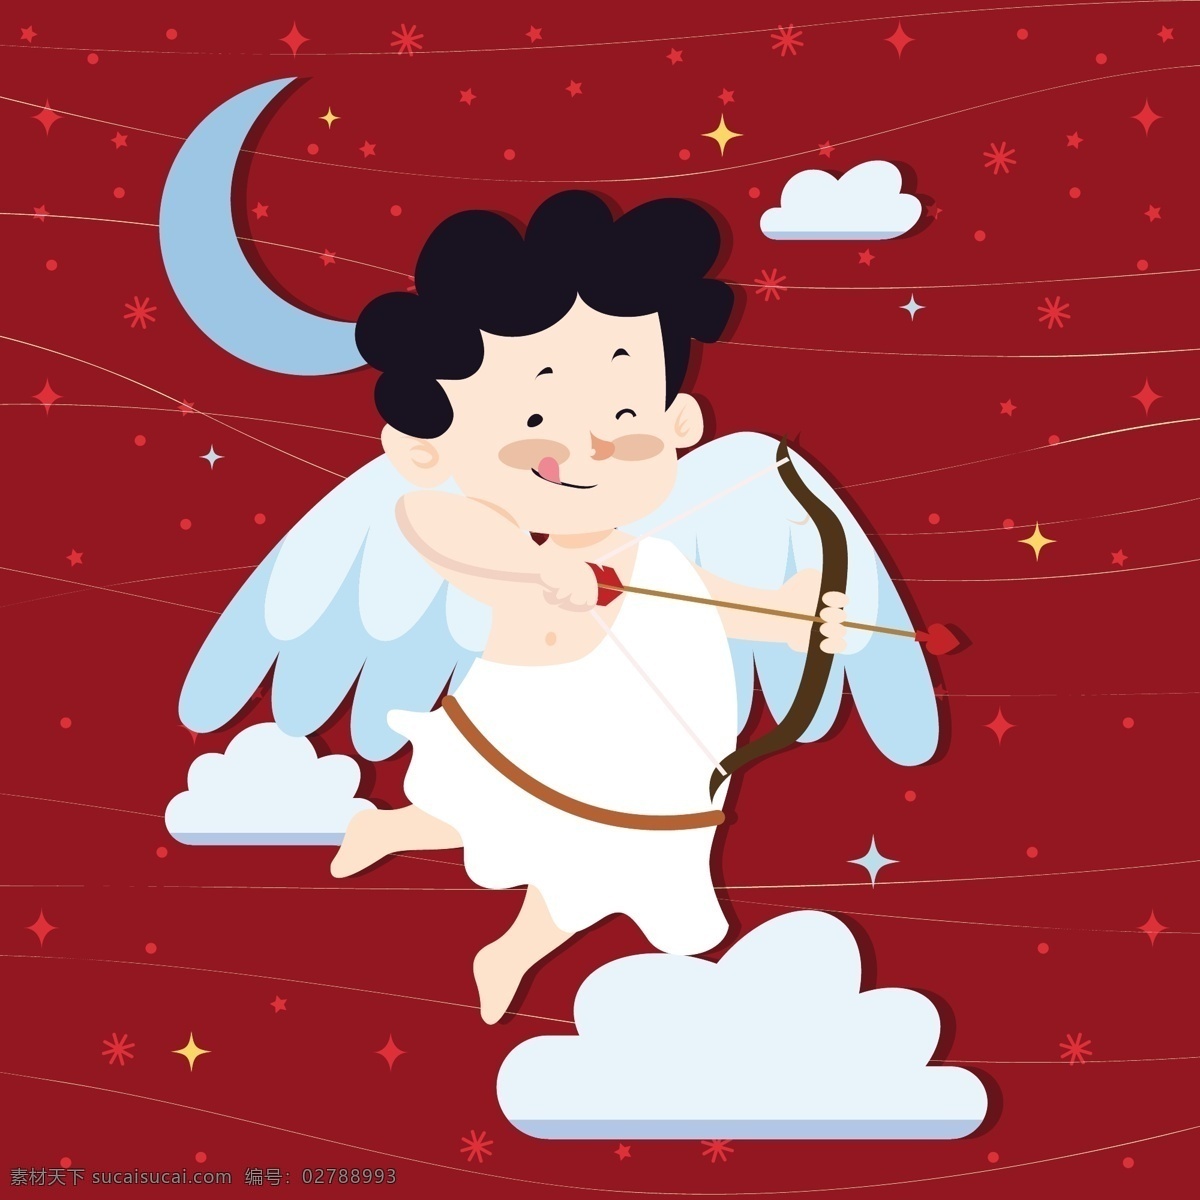 天使 儿童 梦想 红色 背景 白云 翅膀 矢量素材 月亮